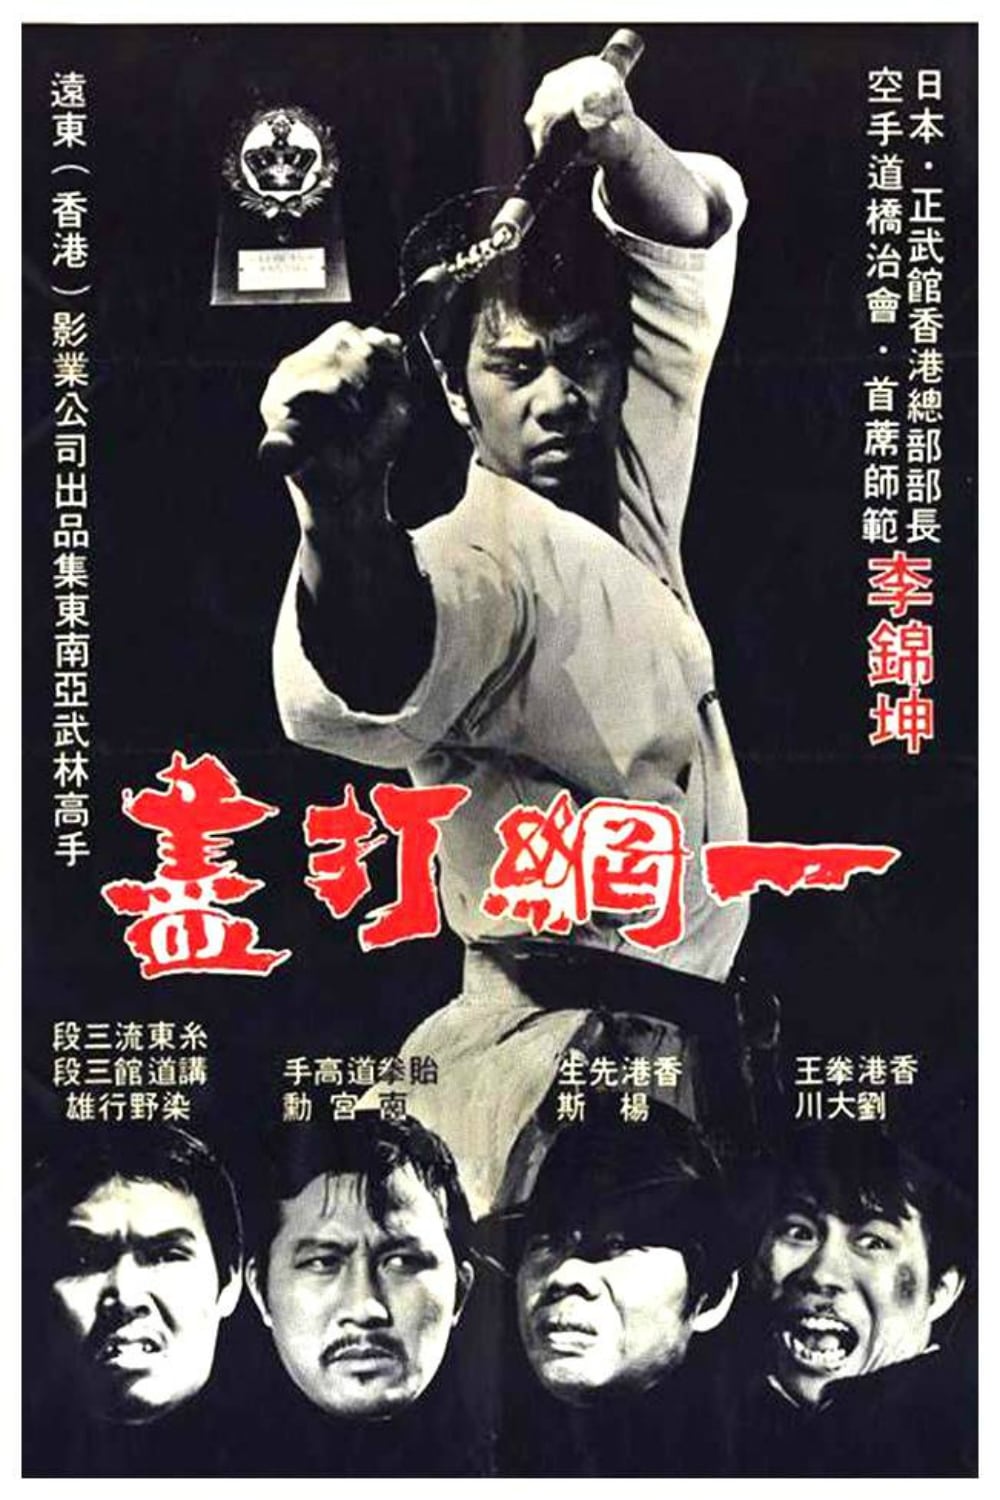 The Thunder Kick (1974)